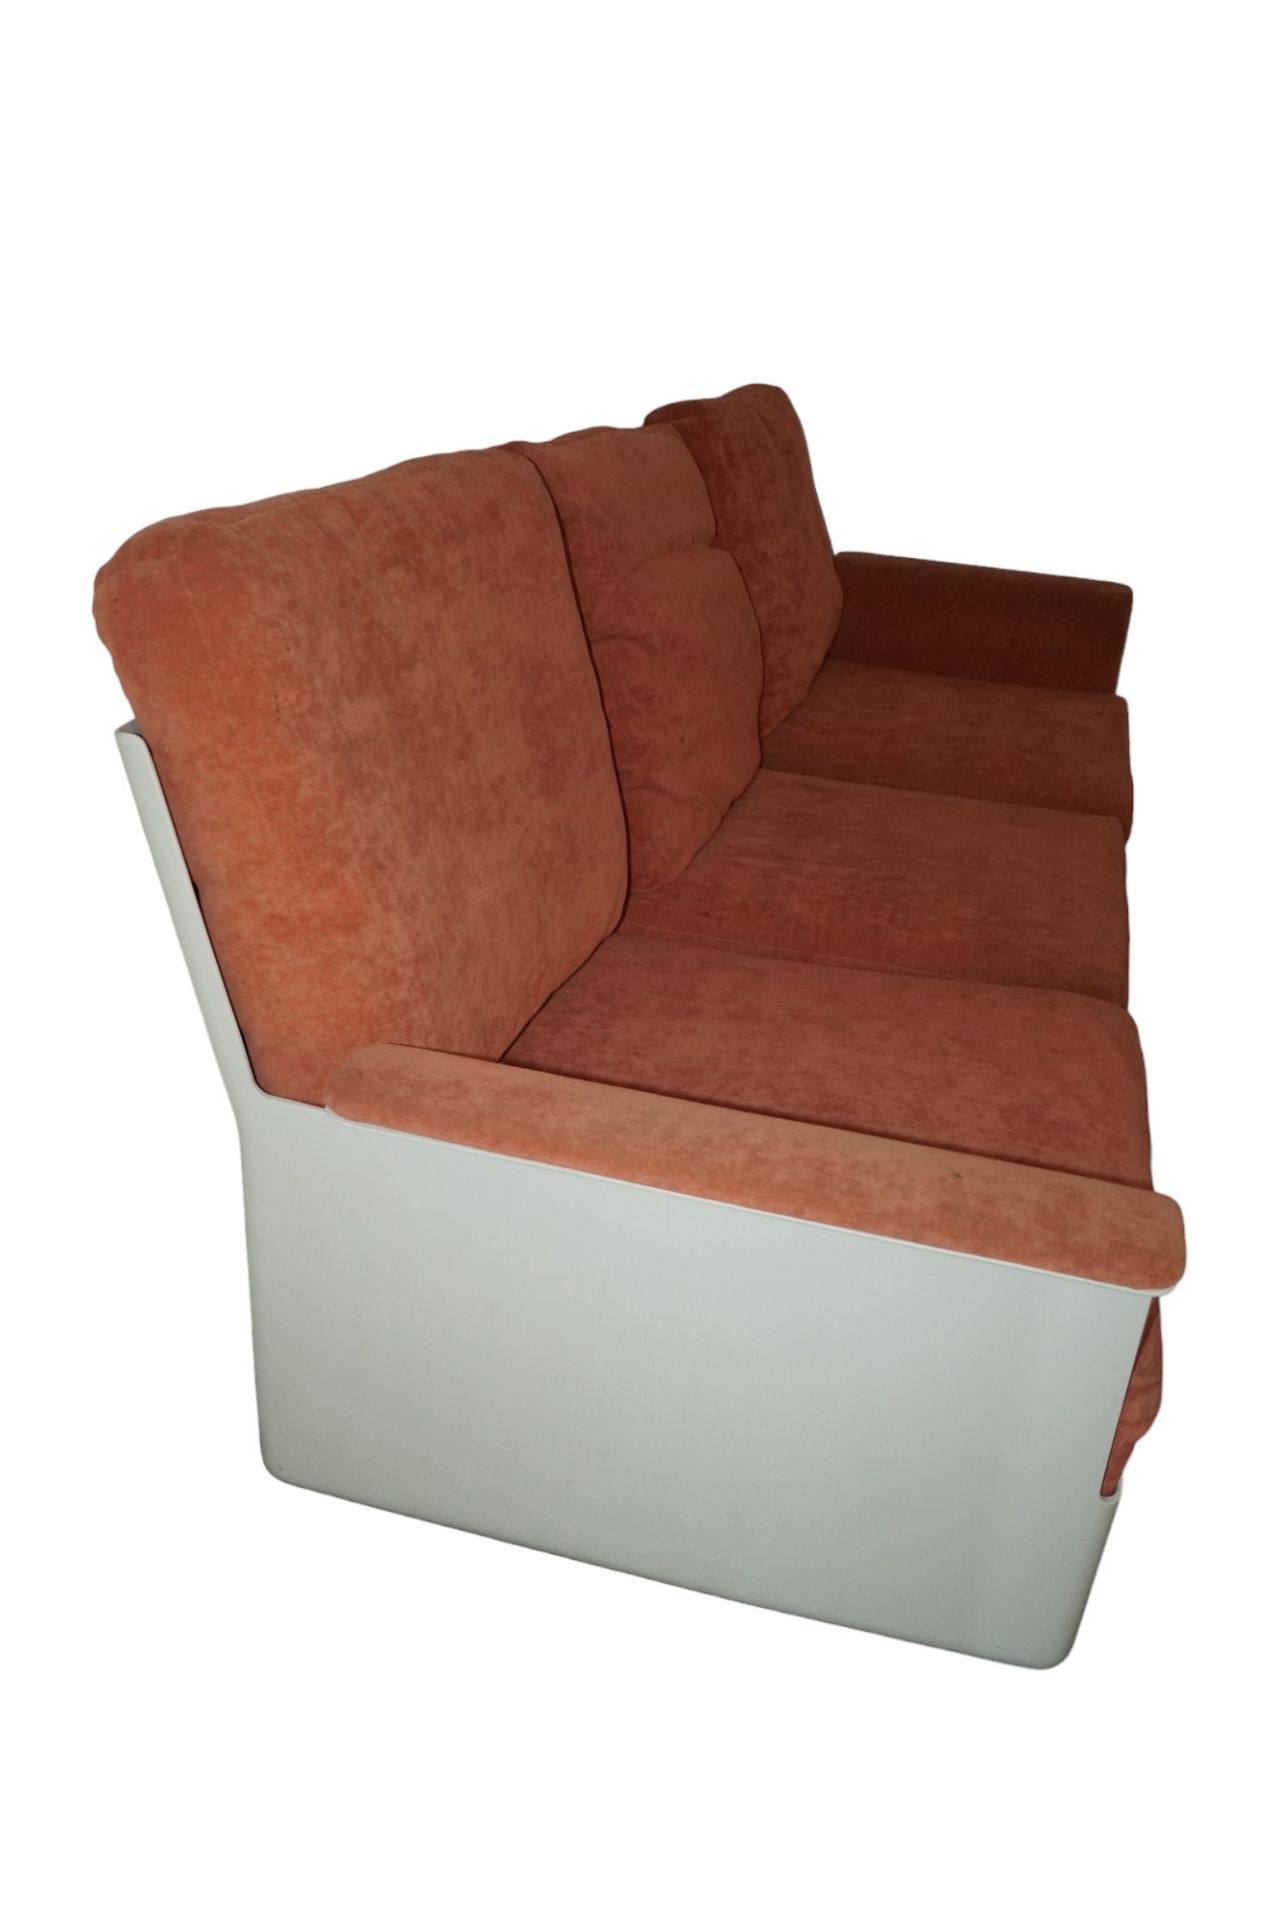 Designer Couch-Garnitur aus Glasfaserschalen mit eingelegten Polsterelementen; ein 3-Sitzer sowie d